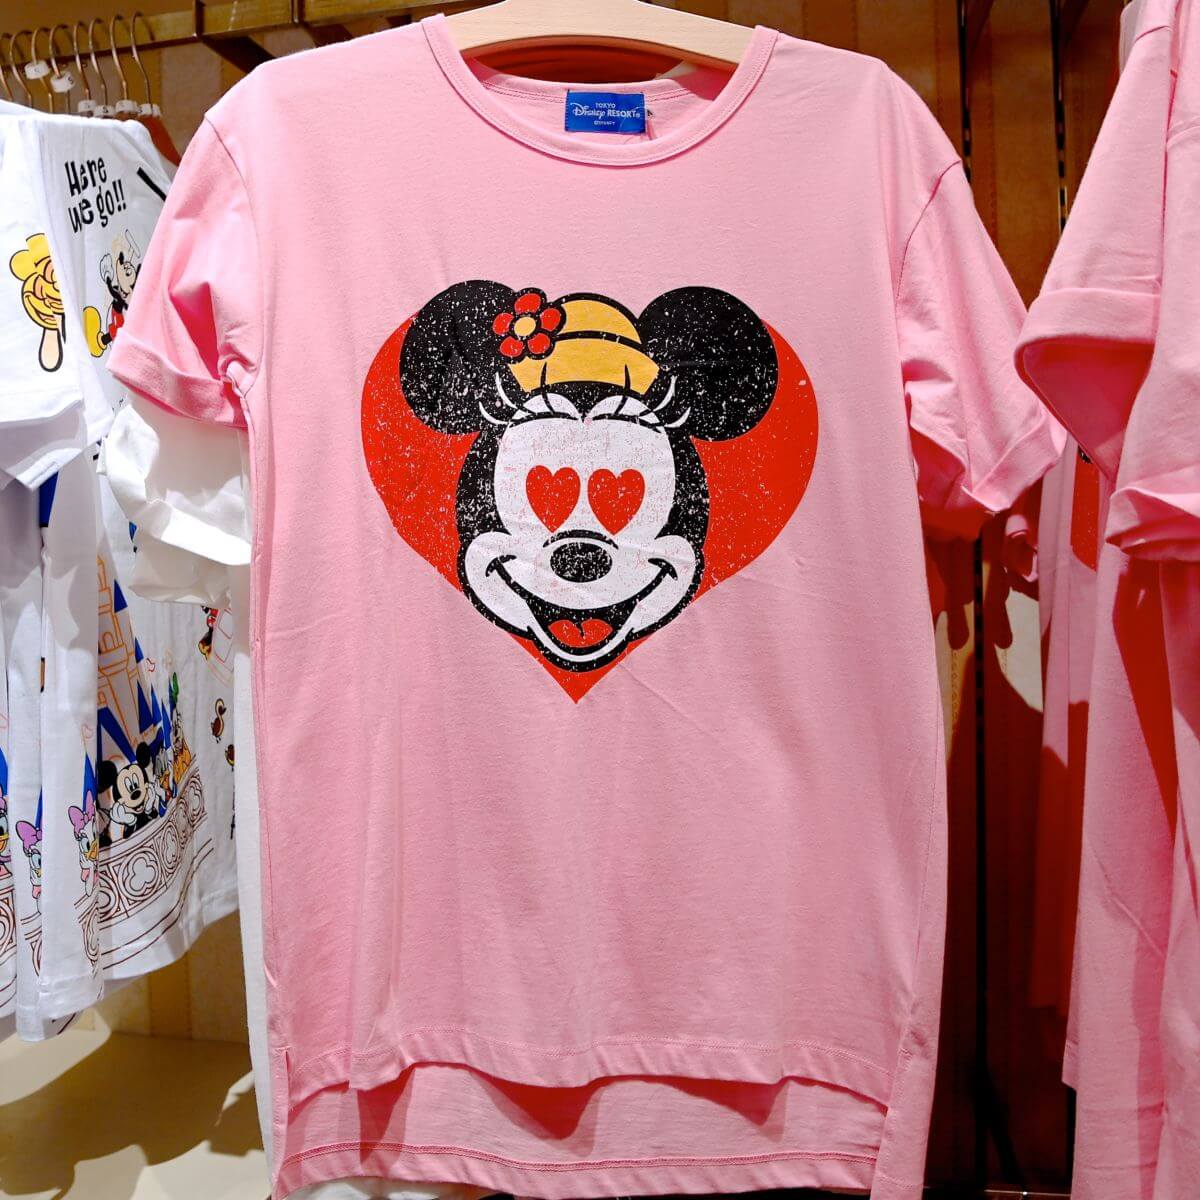 お目々がハートに！東京ディズニーランド「ミッキー&フレンズ」Tシャツ -